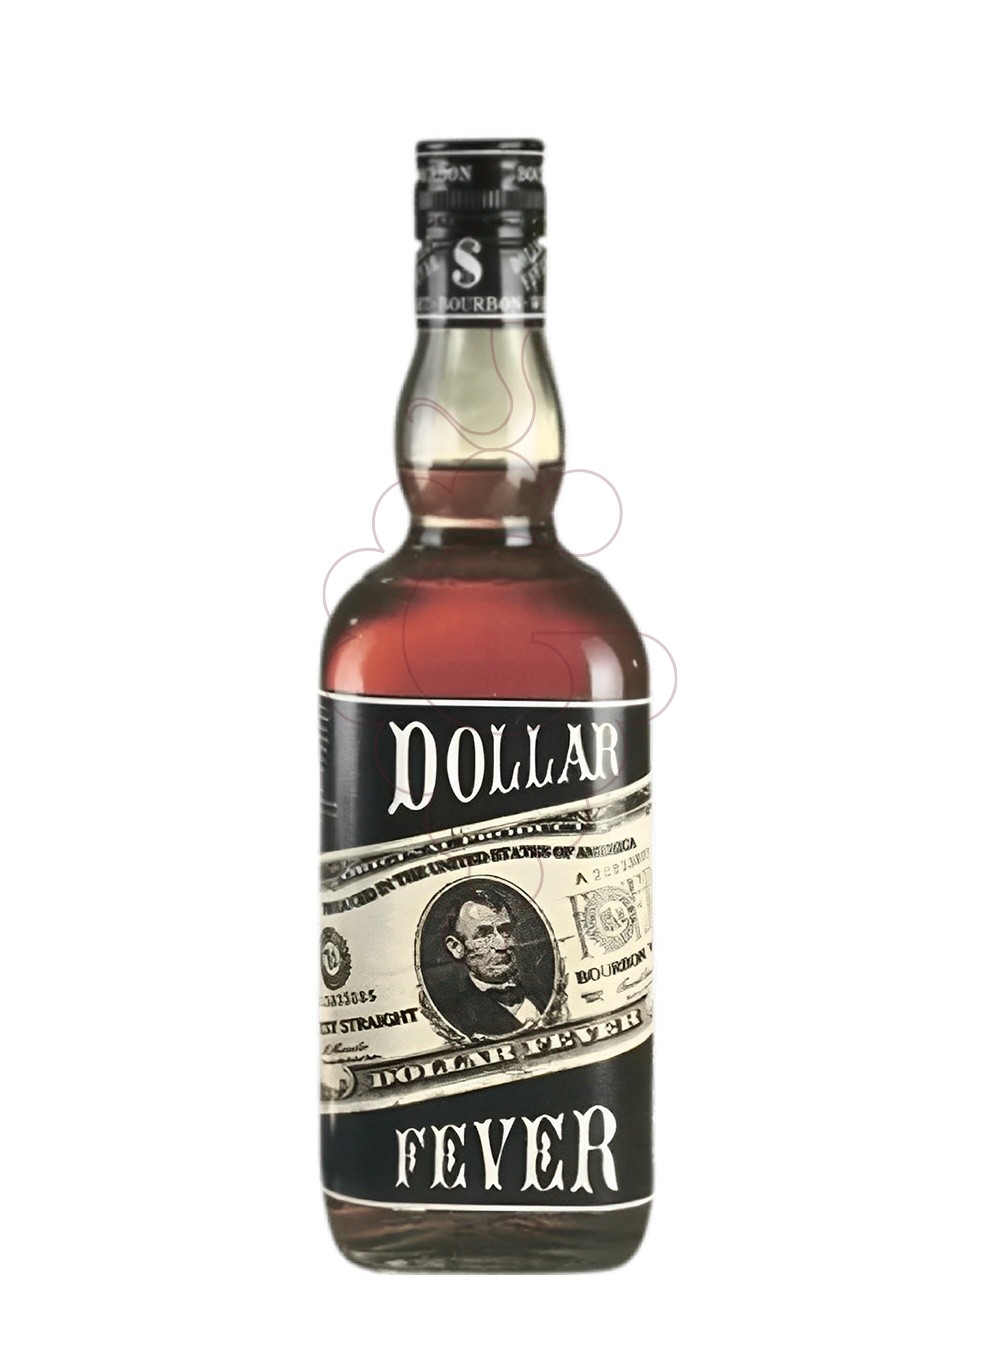 Foto Whisky Dollar Fever Bourbon